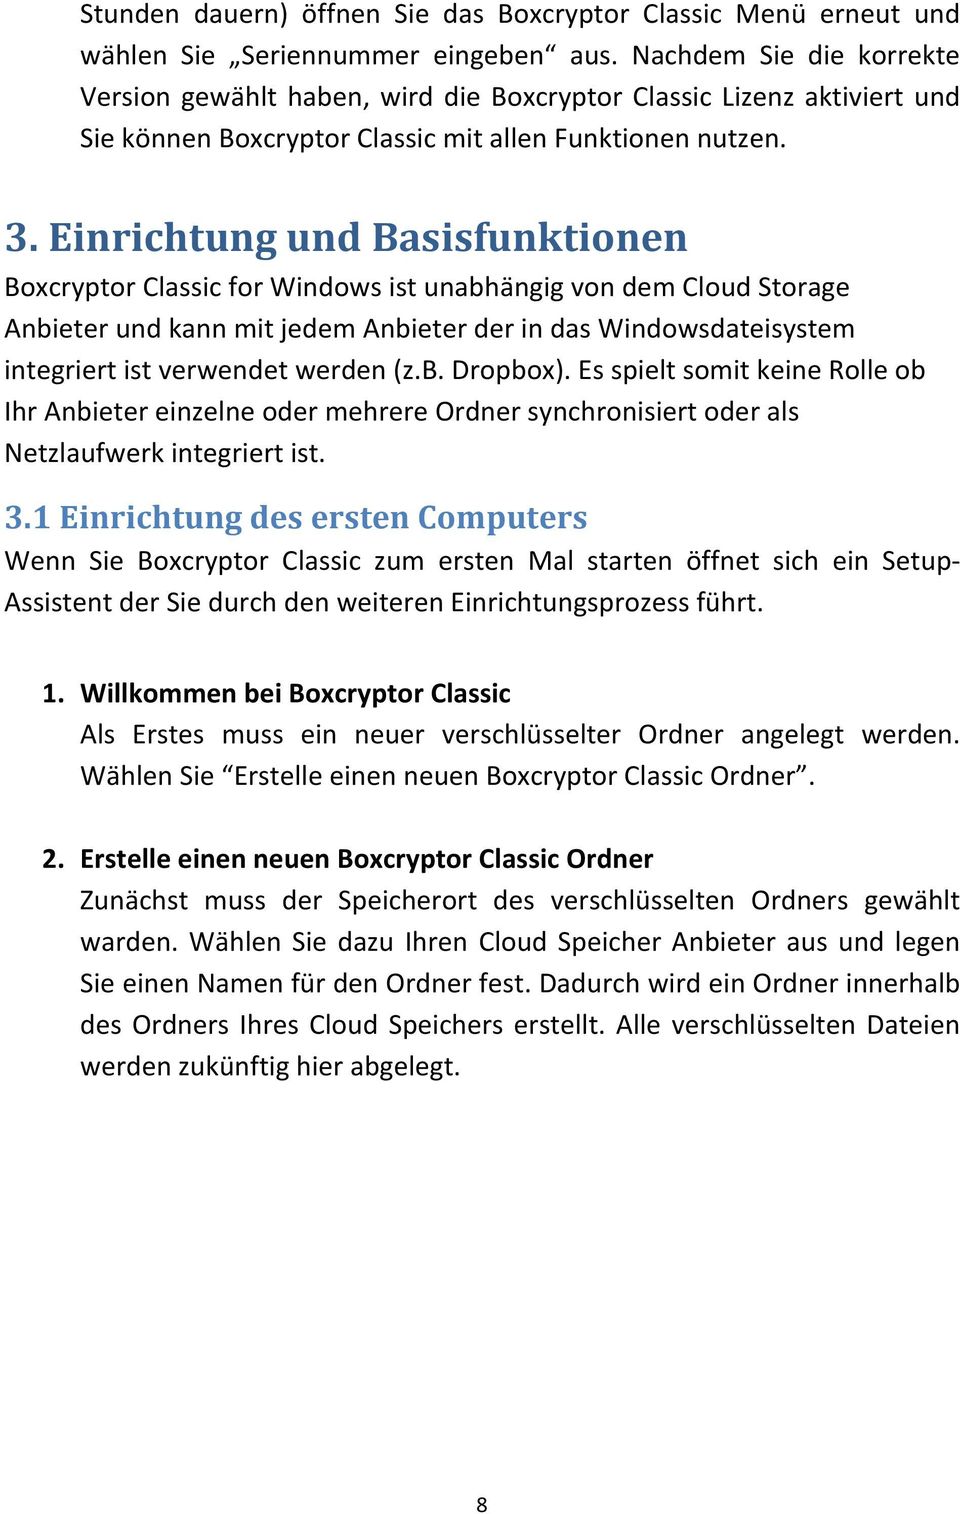 Einrichtung und Basisfunktionen Boxcryptor Classic for Windows ist unabhängig von dem Cloud Storage Anbieter und kann mit jedem Anbieter der in das Windowsdateisystem integriert ist verwendet werden